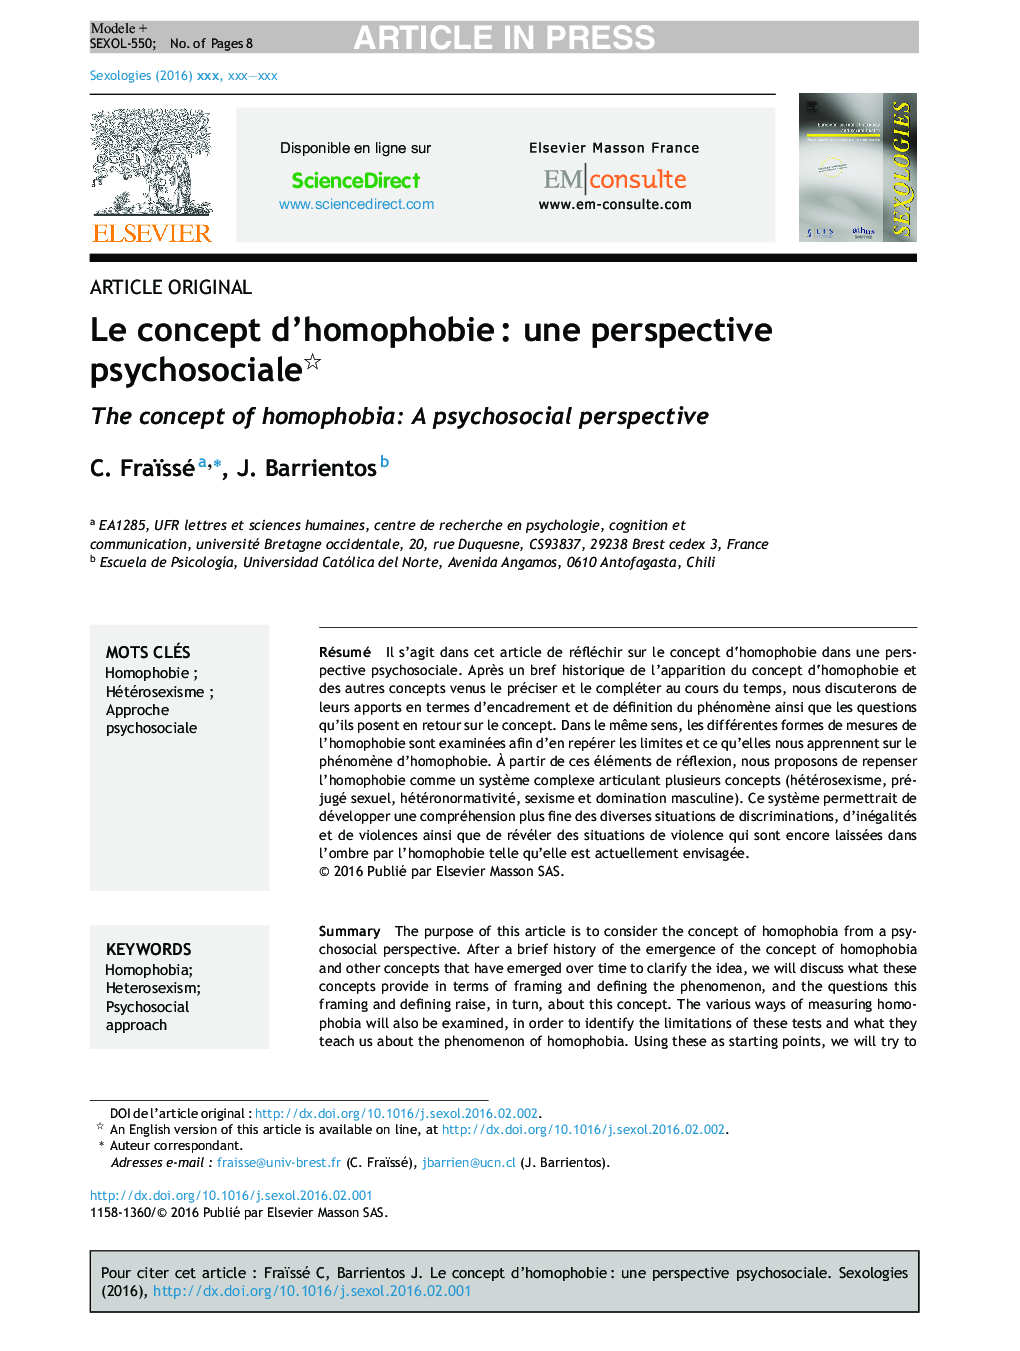 Le concept d'homophobieÂ : une perspective psychosociale